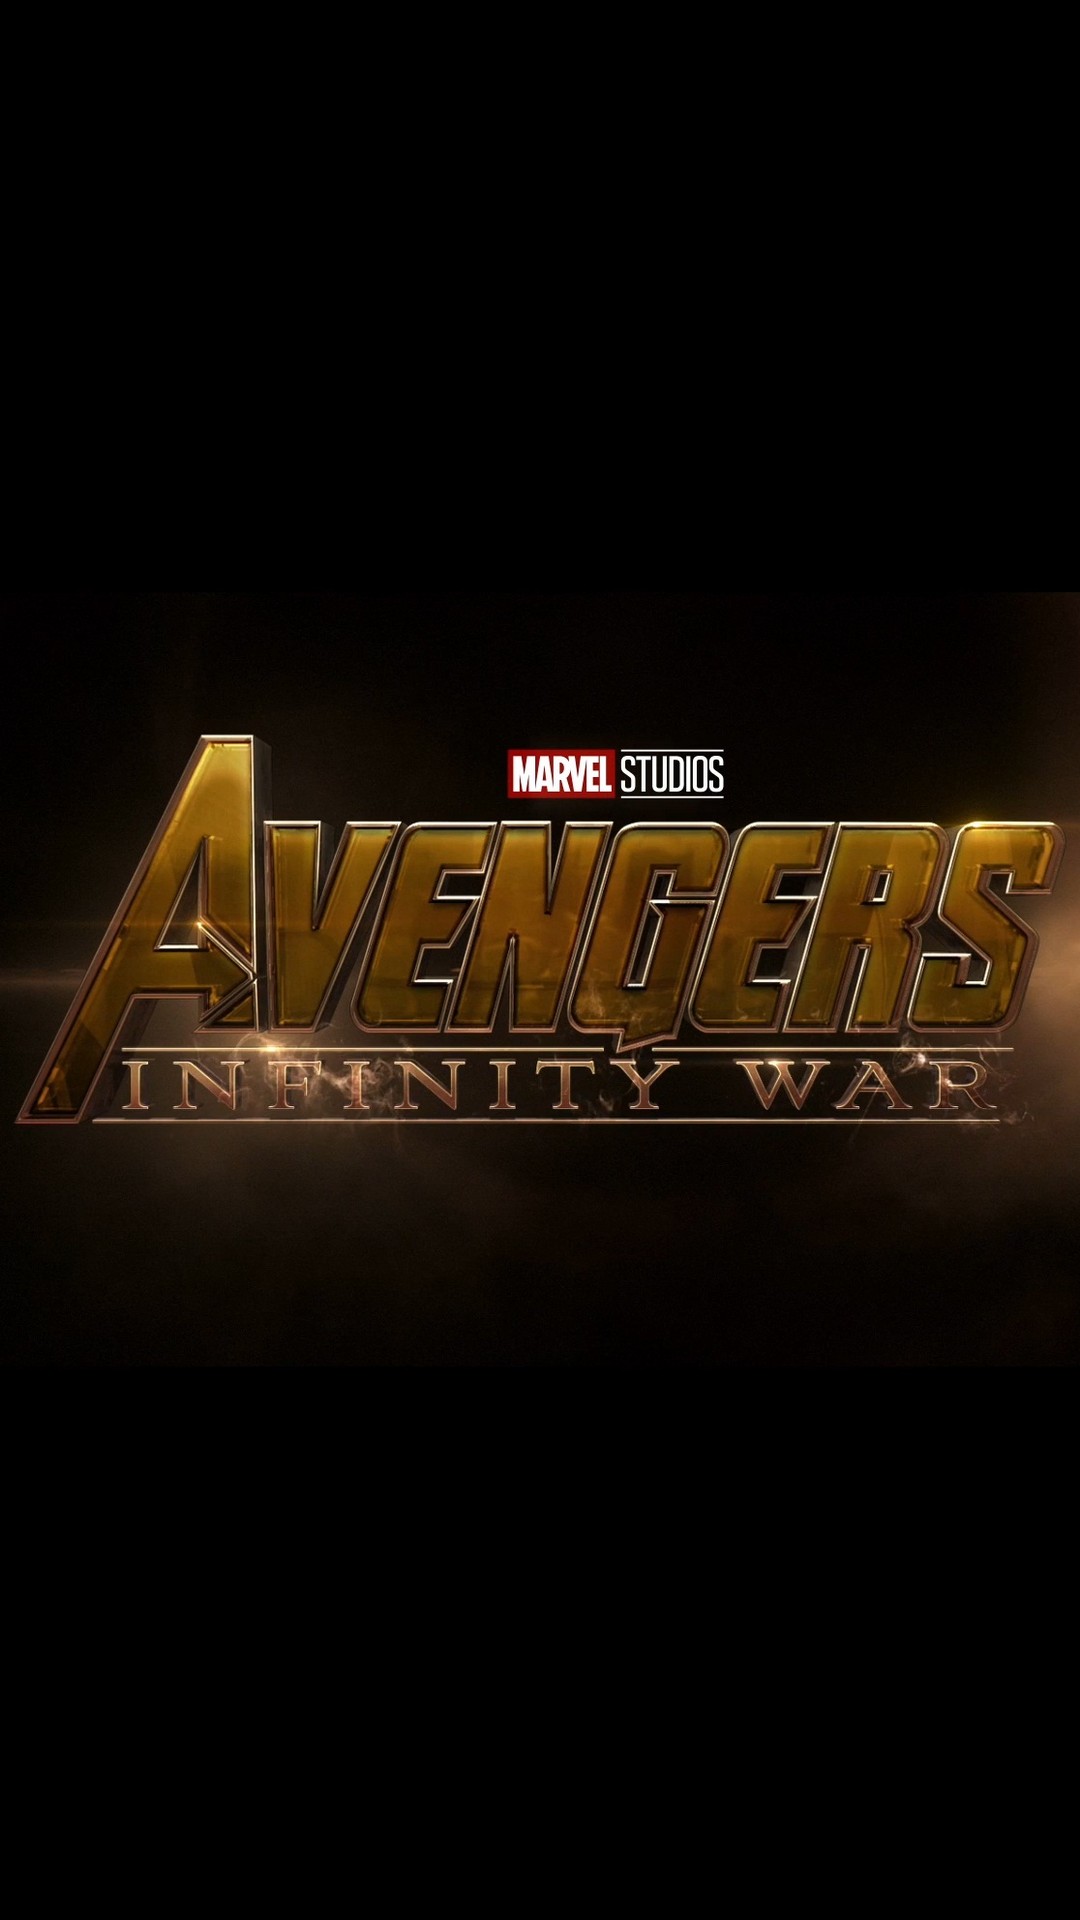 iPhone X Wallpaper Avengers Infinity War resolution 1080x1920